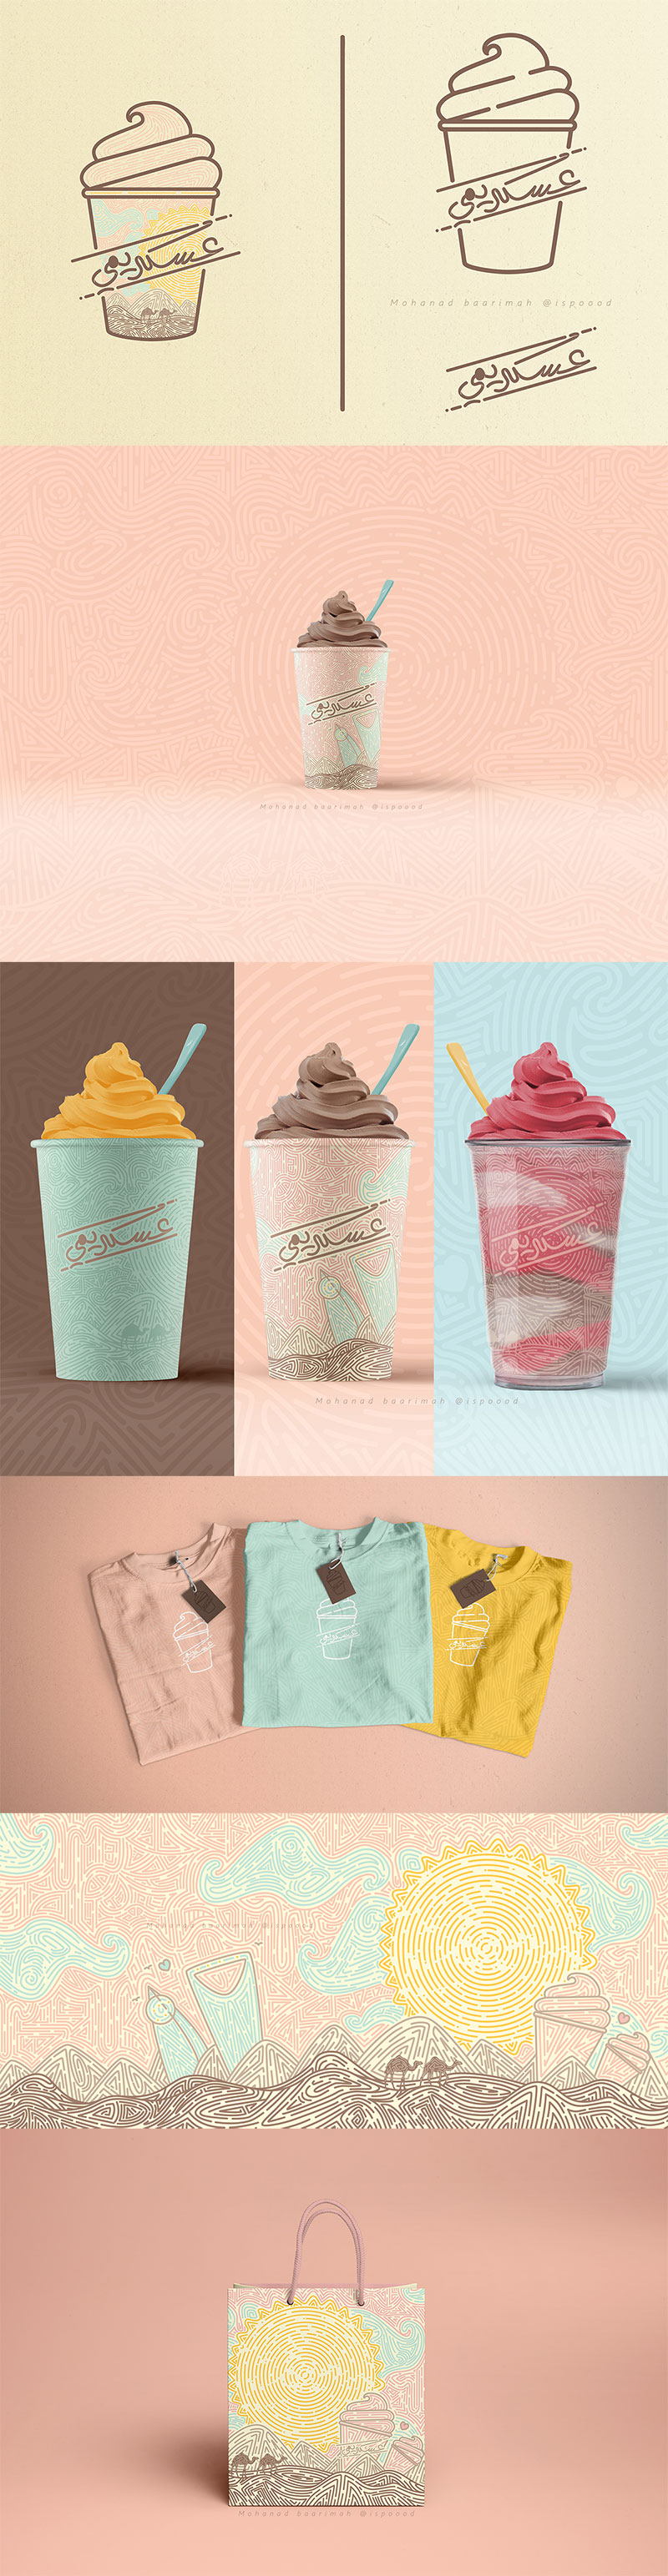 26款国外创意冰淇淋包装设计